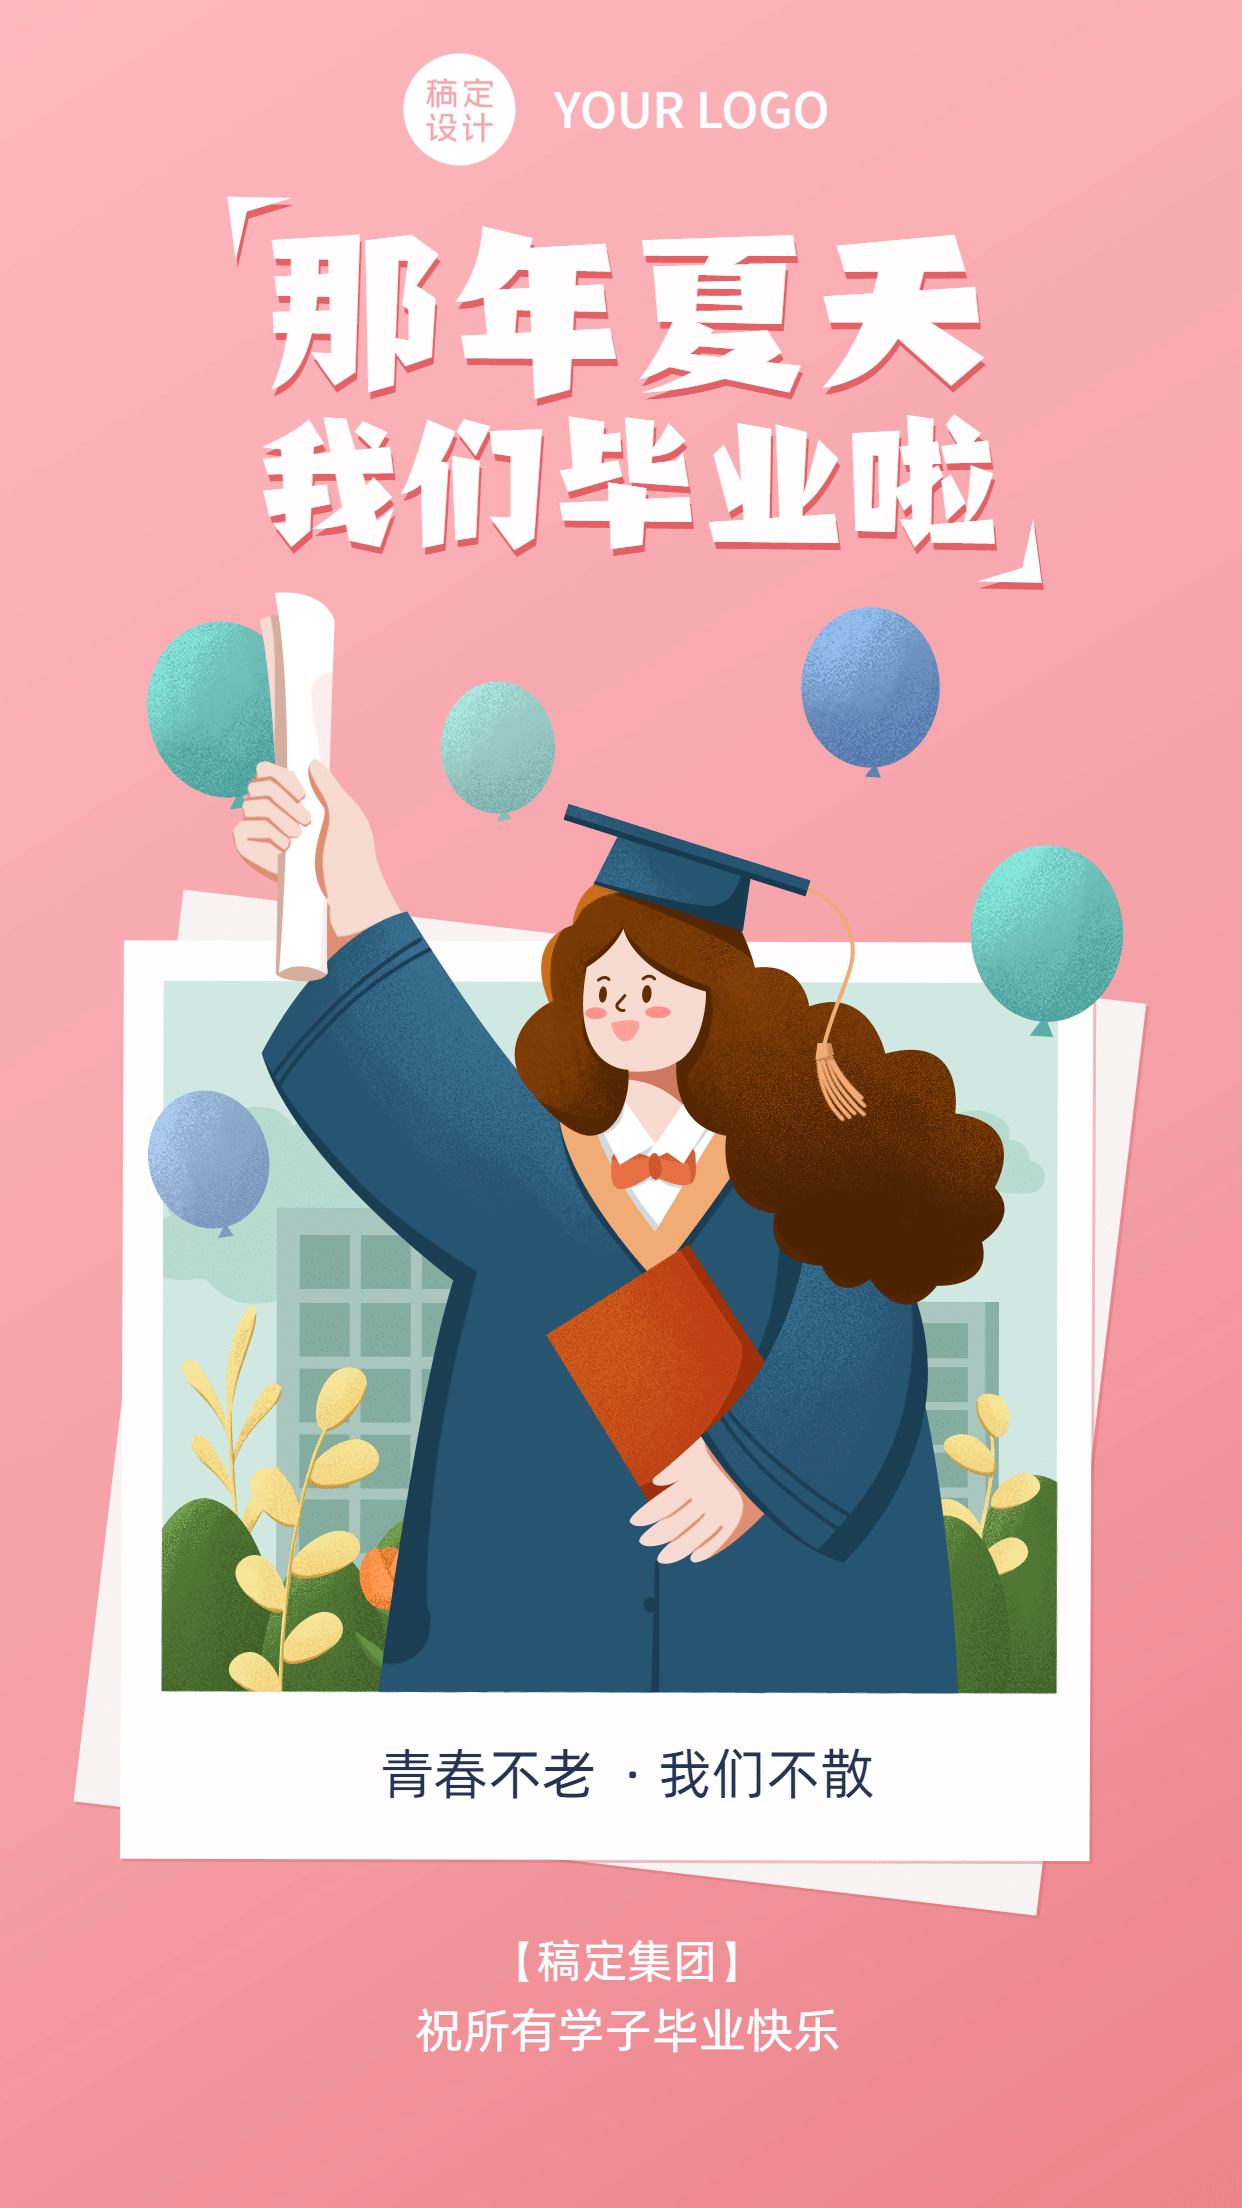 毕业季宣传推广电子贺卡手绘海报